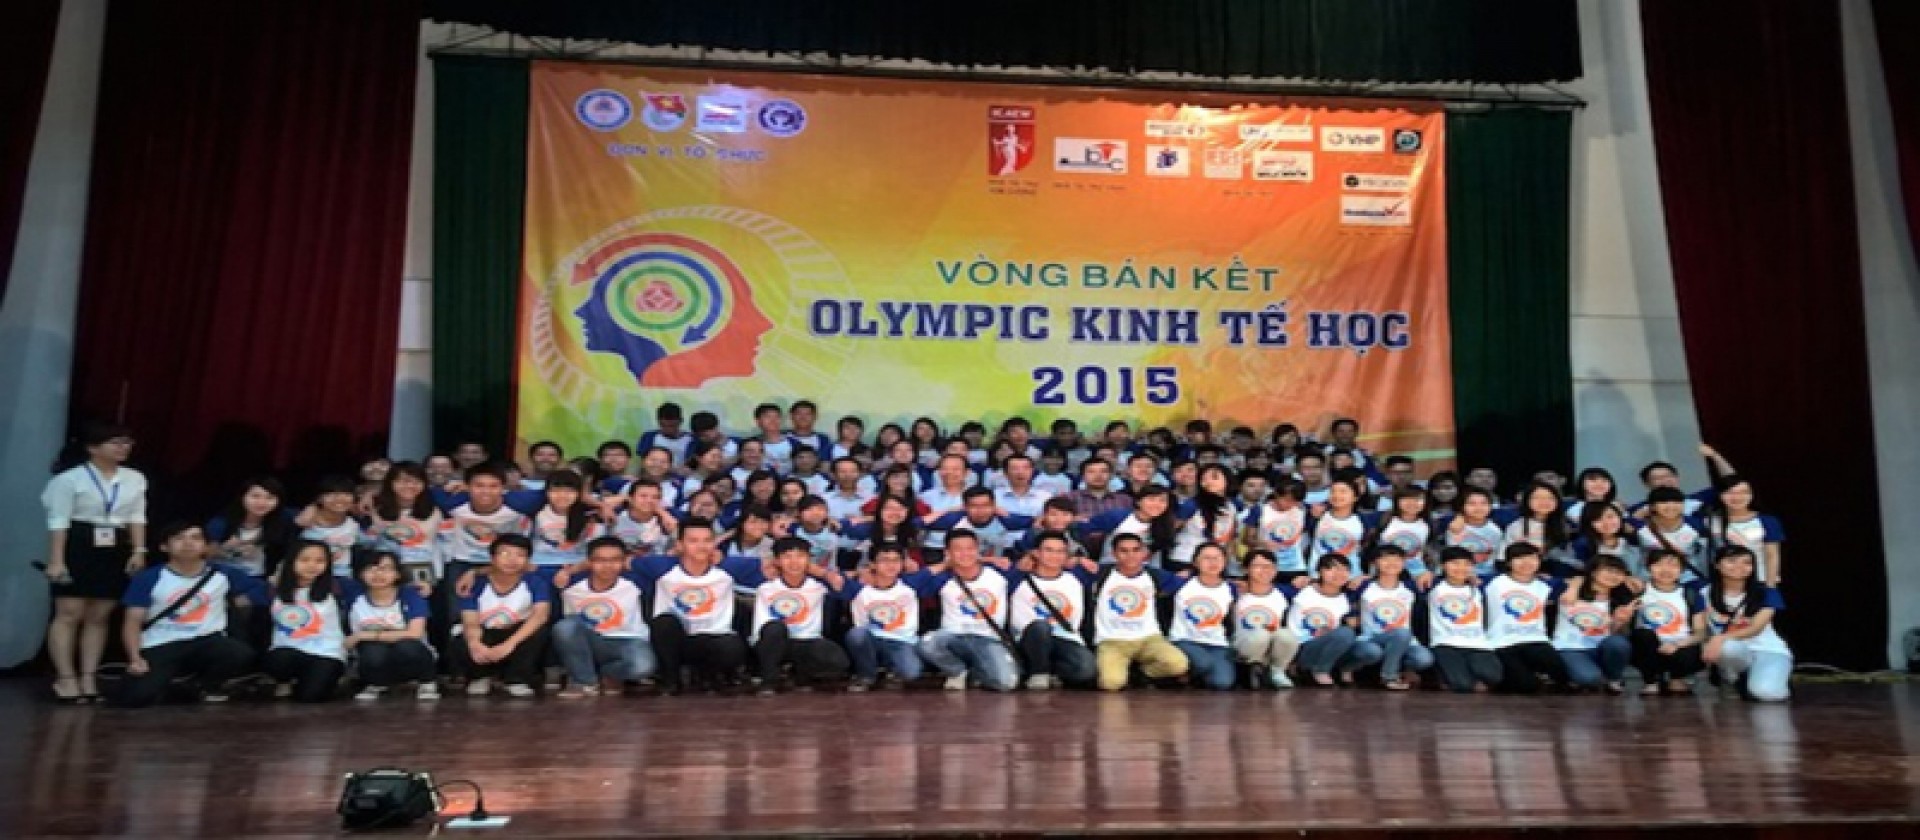 Bán Kết Cuộc Thi “Olympic Kinh Tế Học 2015” – Trí Tuệ, Hấp Dẫn, Đầy Kịch Tính